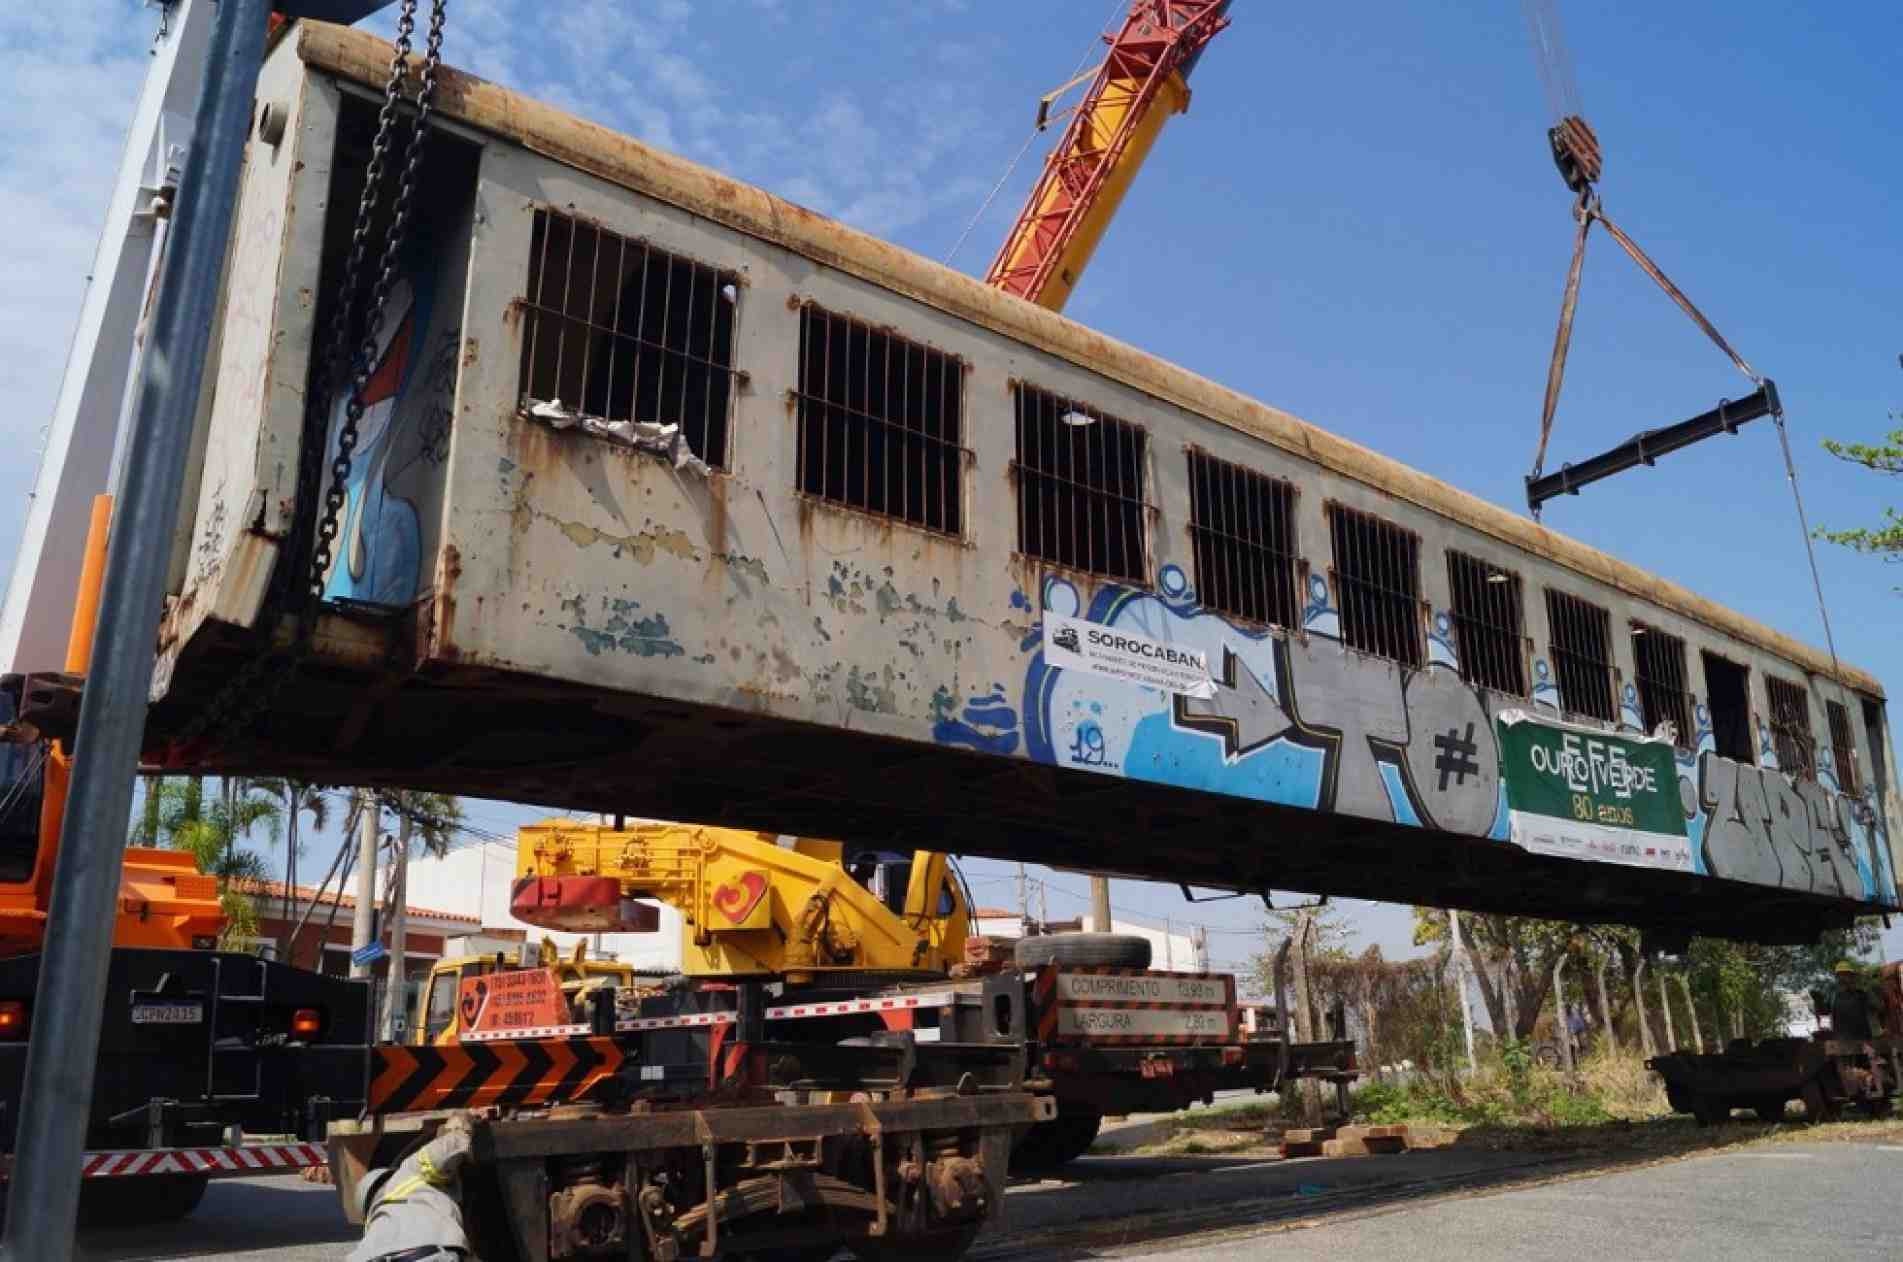 Projeto transporta outros três carros do antigo Trem Ouro Verde para Sorocaba.